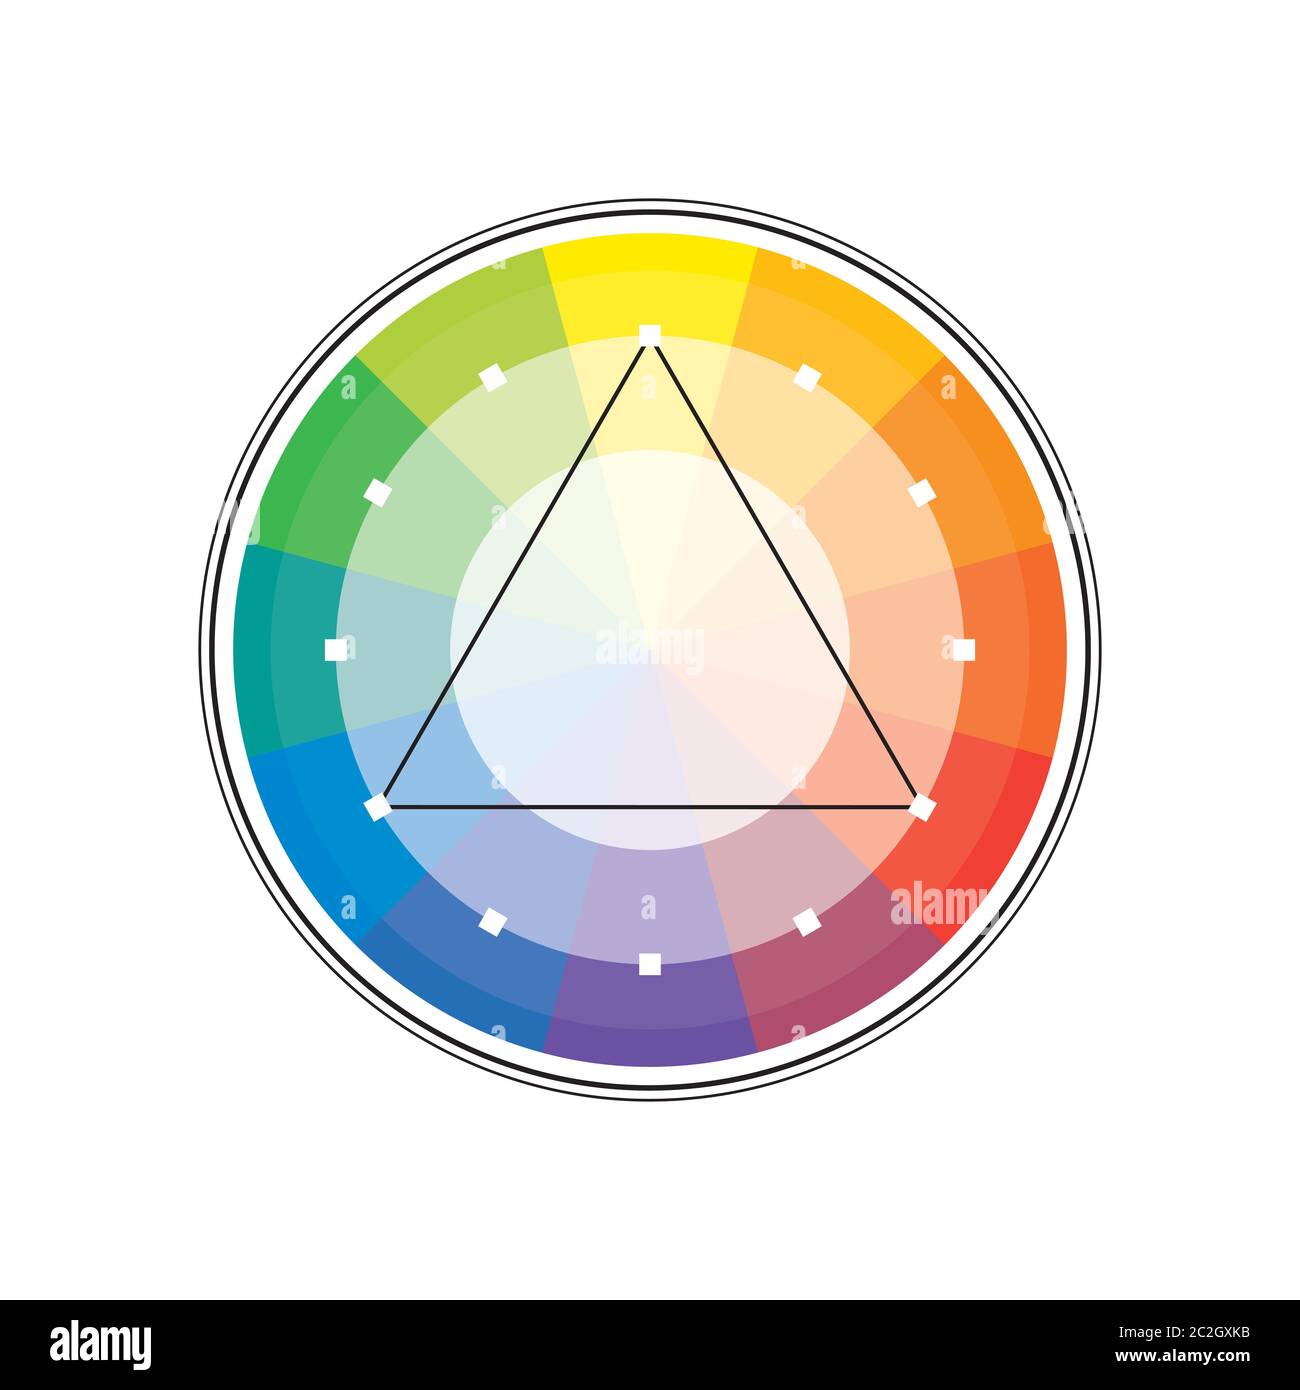 Policrome spettrale multicolore Versicolor Rainbow cerchio di 12 segmenti. L'armonica spettrale colorata tavolozza di pittore. Foto Stock